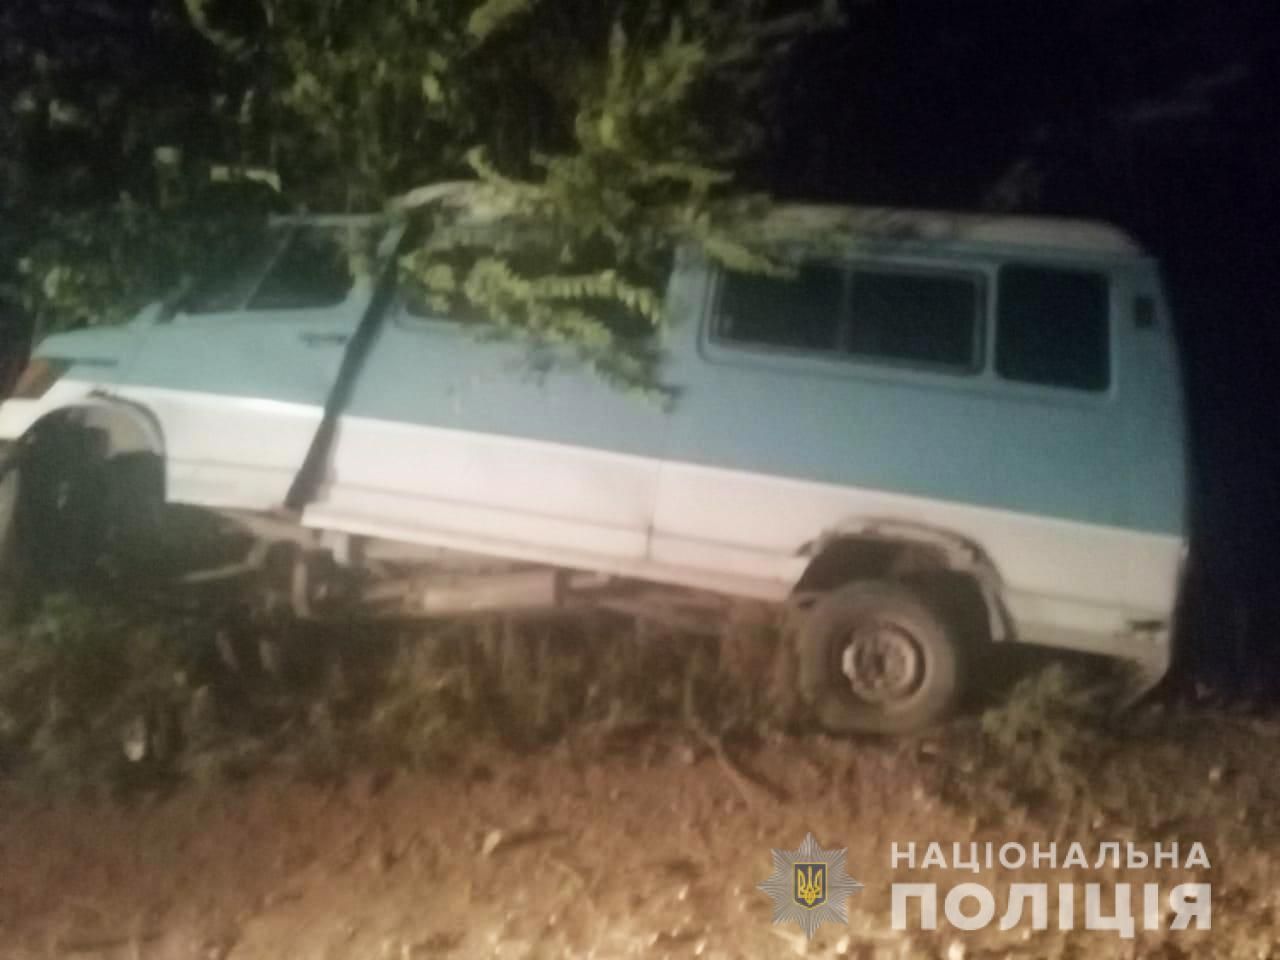 Ехал пьяный: на Николаевщине водитель устроил смертельное ДТП, бросил людей и скрылся